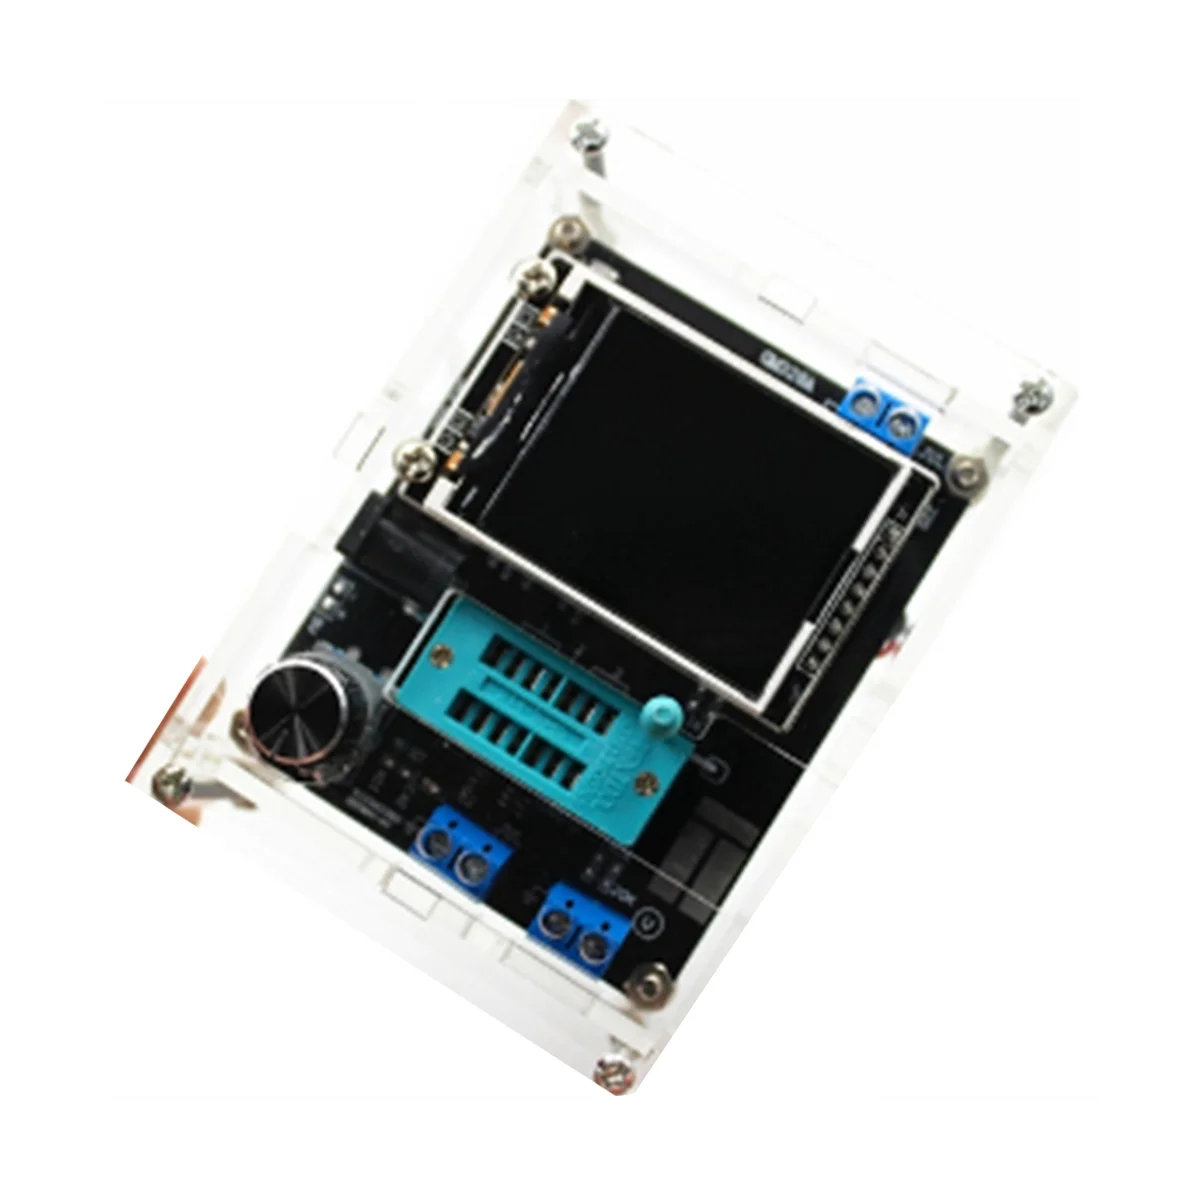 

ЖК-дисплей GM328A тестер диодов транзисторов емкость ESR измеритель частоты напряжения ШИМ для фотооборудования (B)